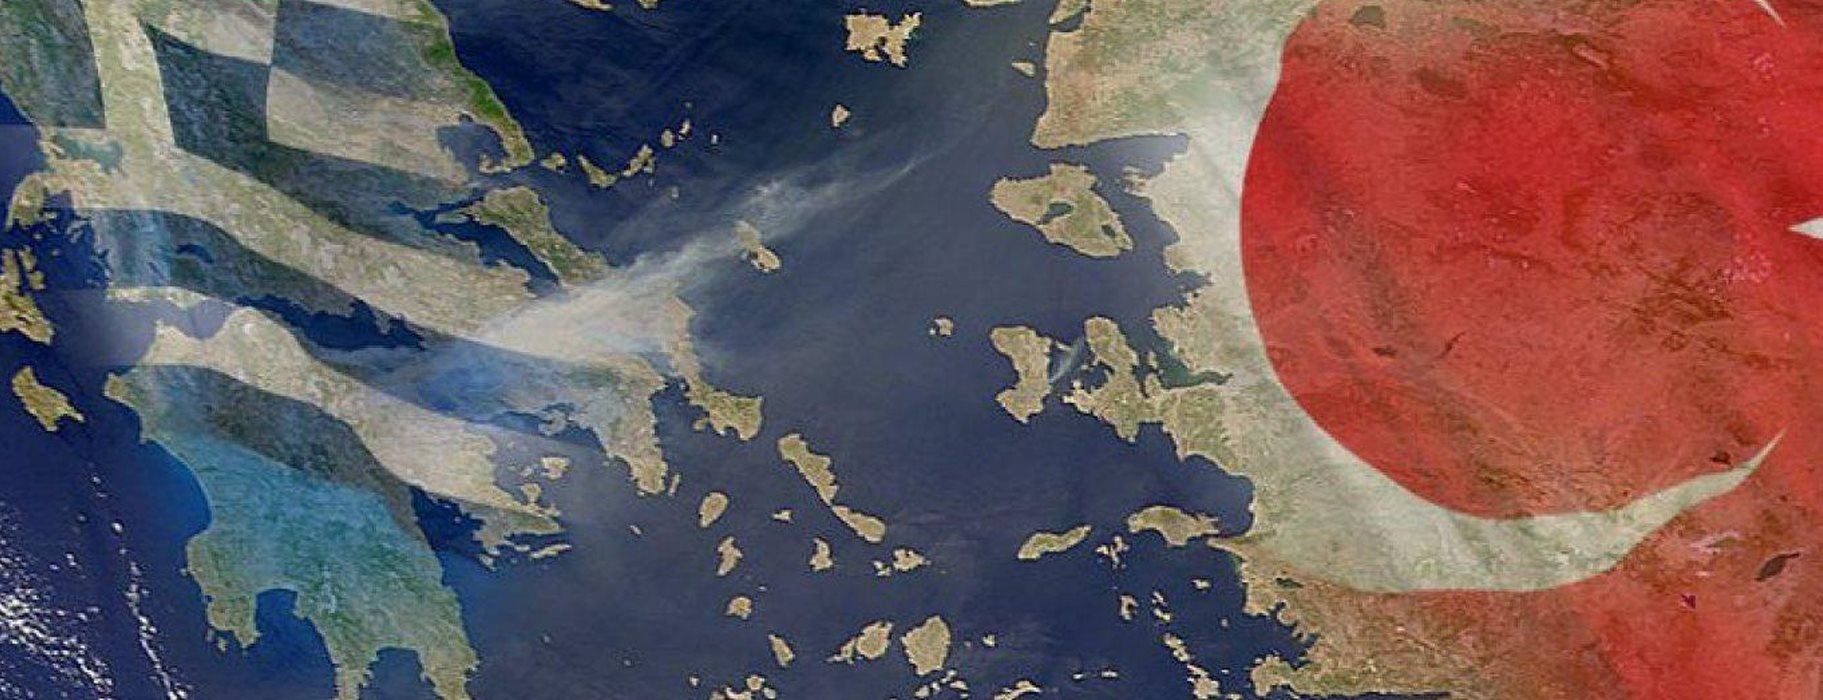 Τούρκοι ισλαμιστές πήραν τηλέφωνο ελληνική εφημερίδα: «Θα στήσουμε την τουρκική σημαία στην Αθήνα»